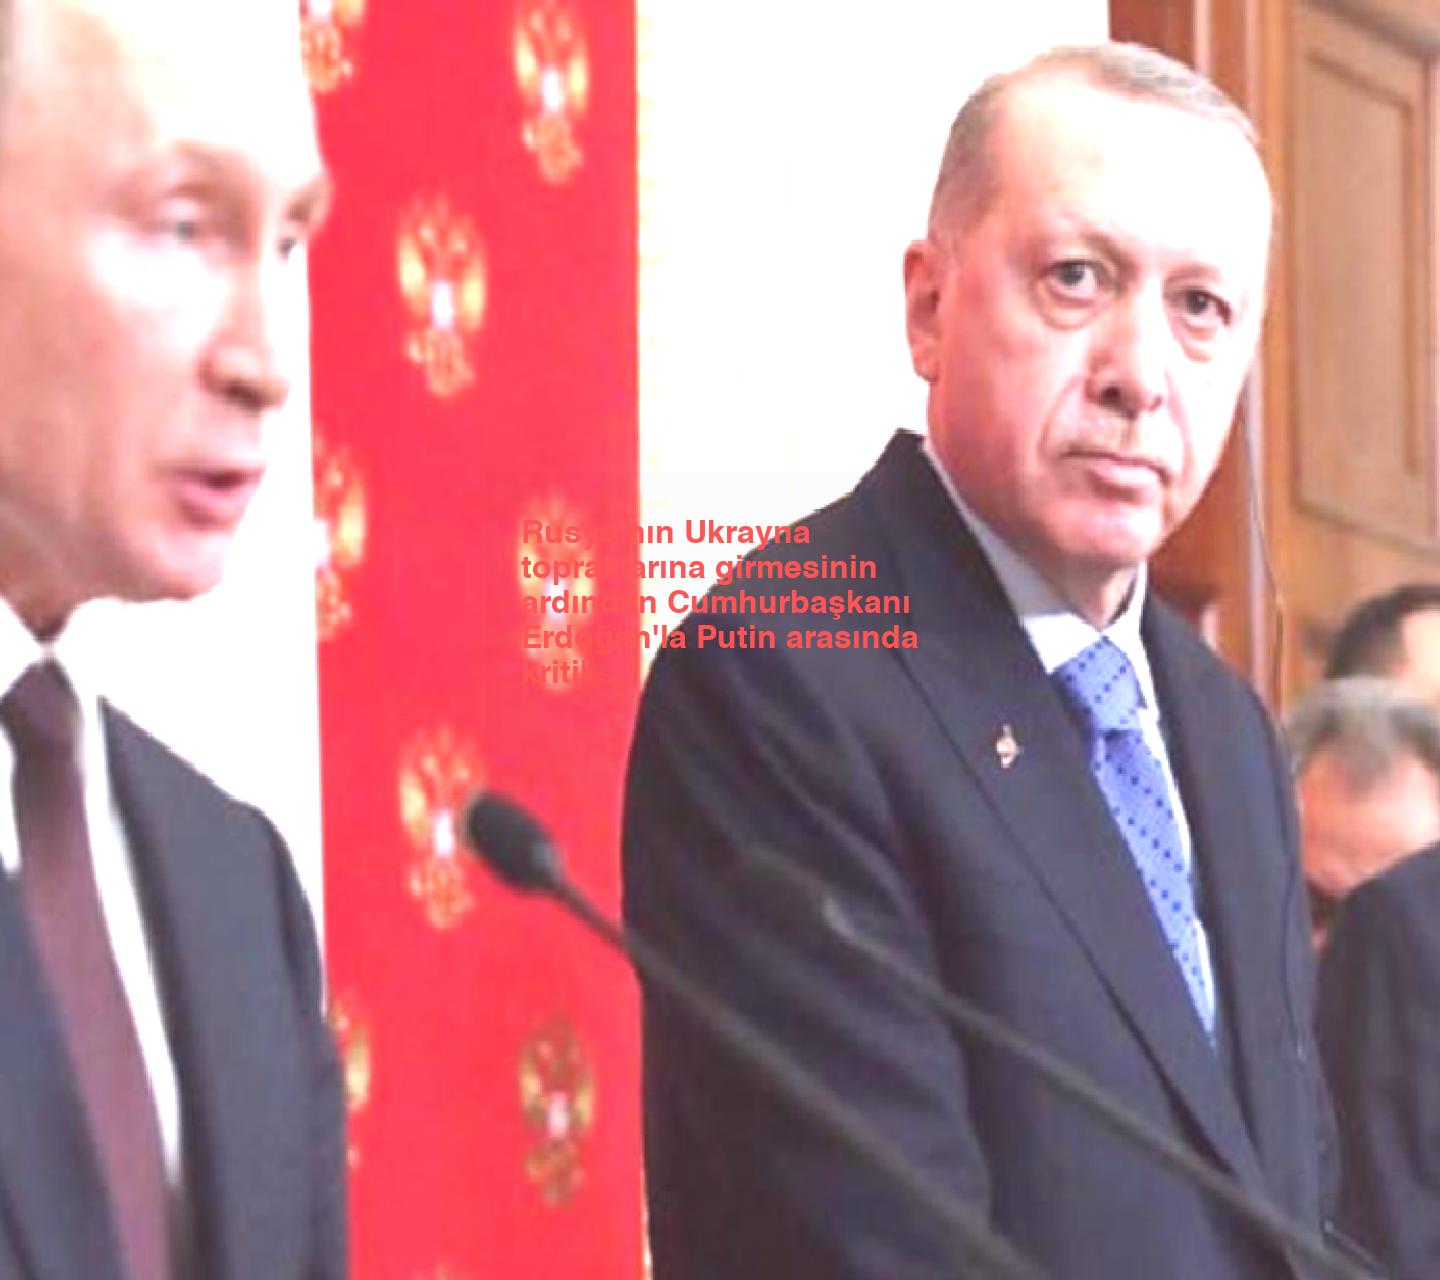 Rusya’nın Ukrayna topraklarına girmesinin ardından Cumhurbaşkanı Erdoğan’la Putin arasında kritik zirve